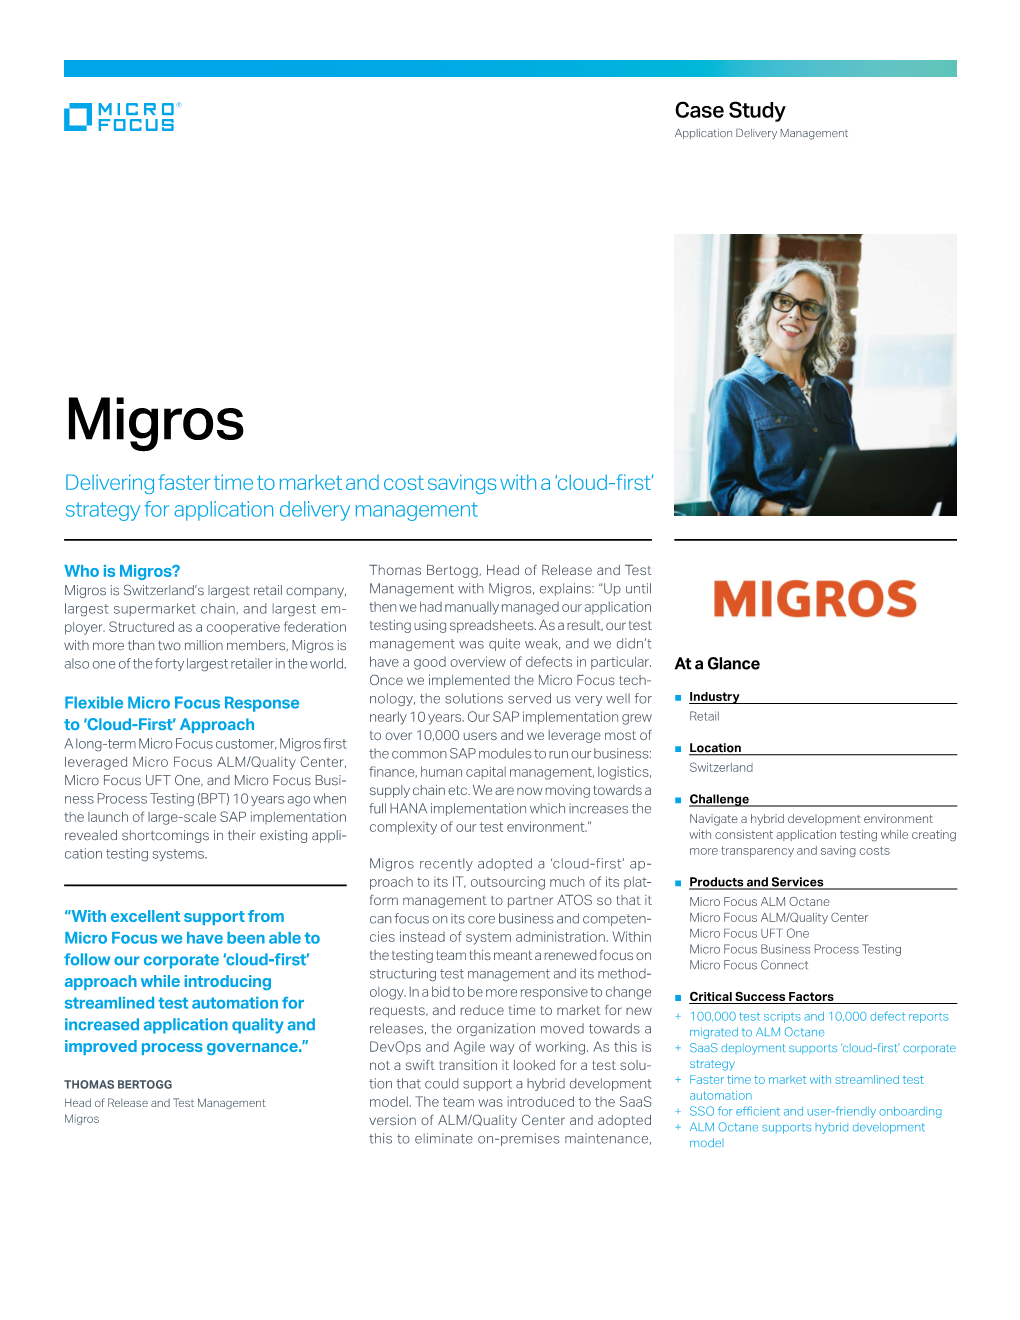 Migros Case Study